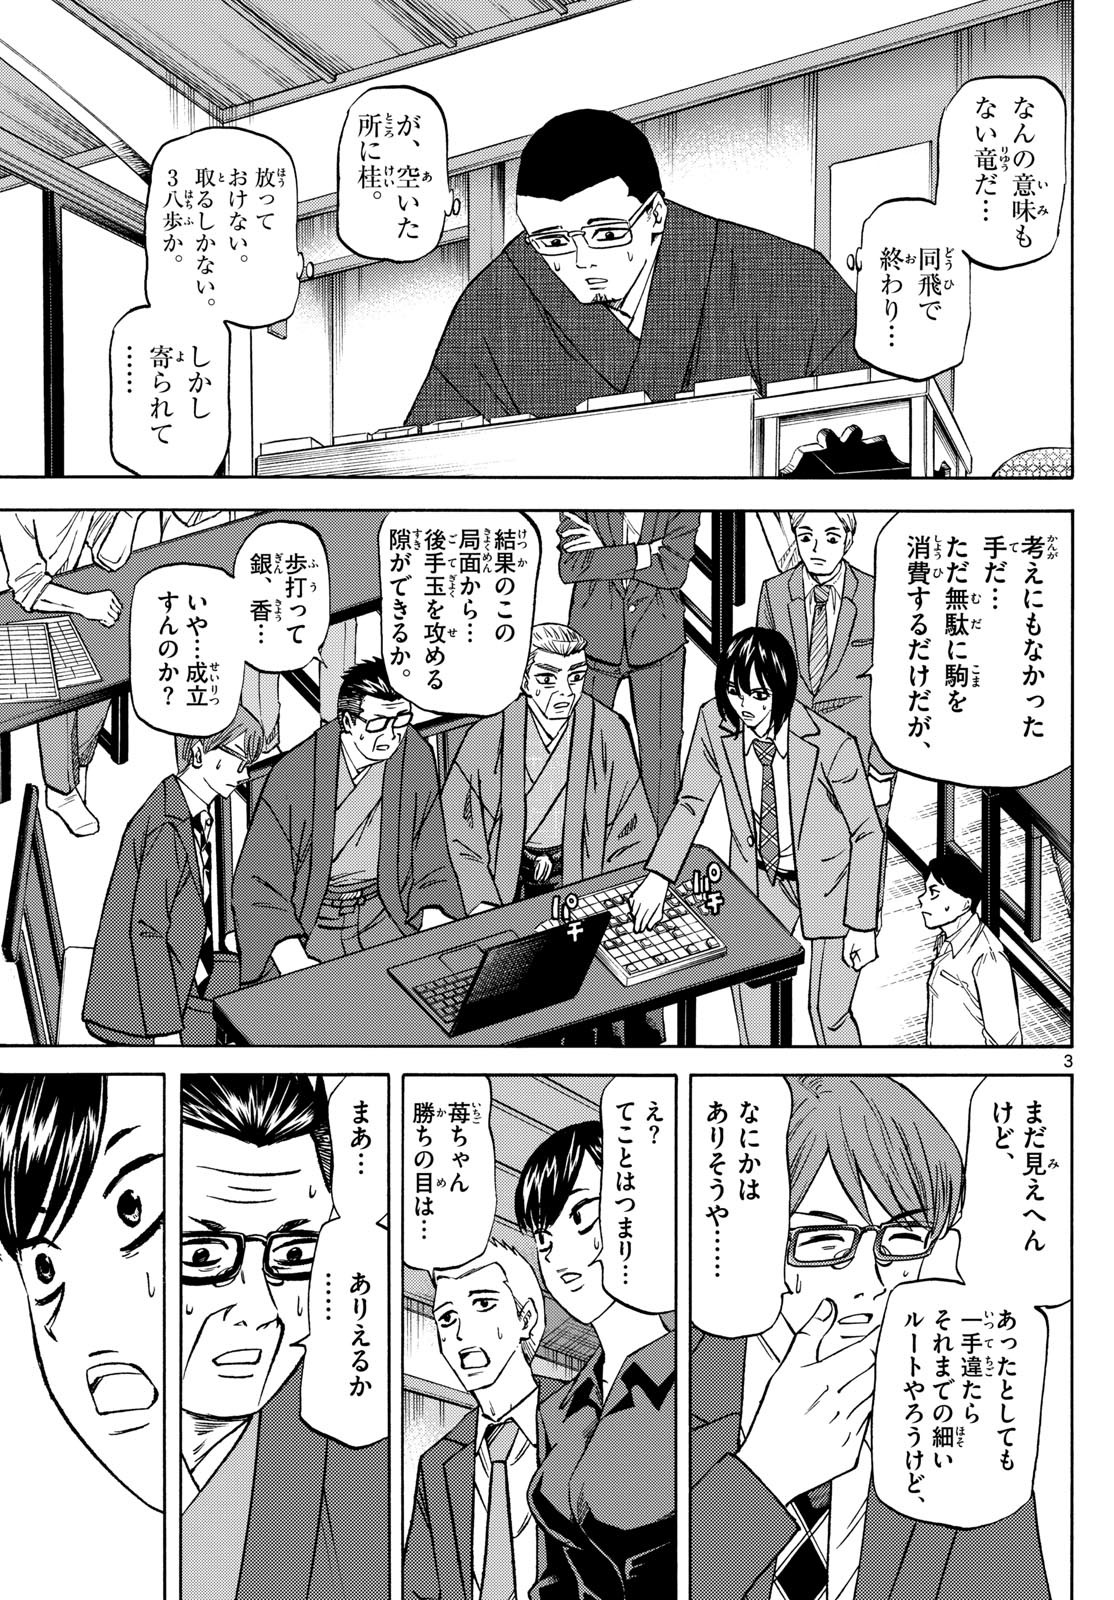 Ryu-to-Ichigo - Chapter 179 - Page 3